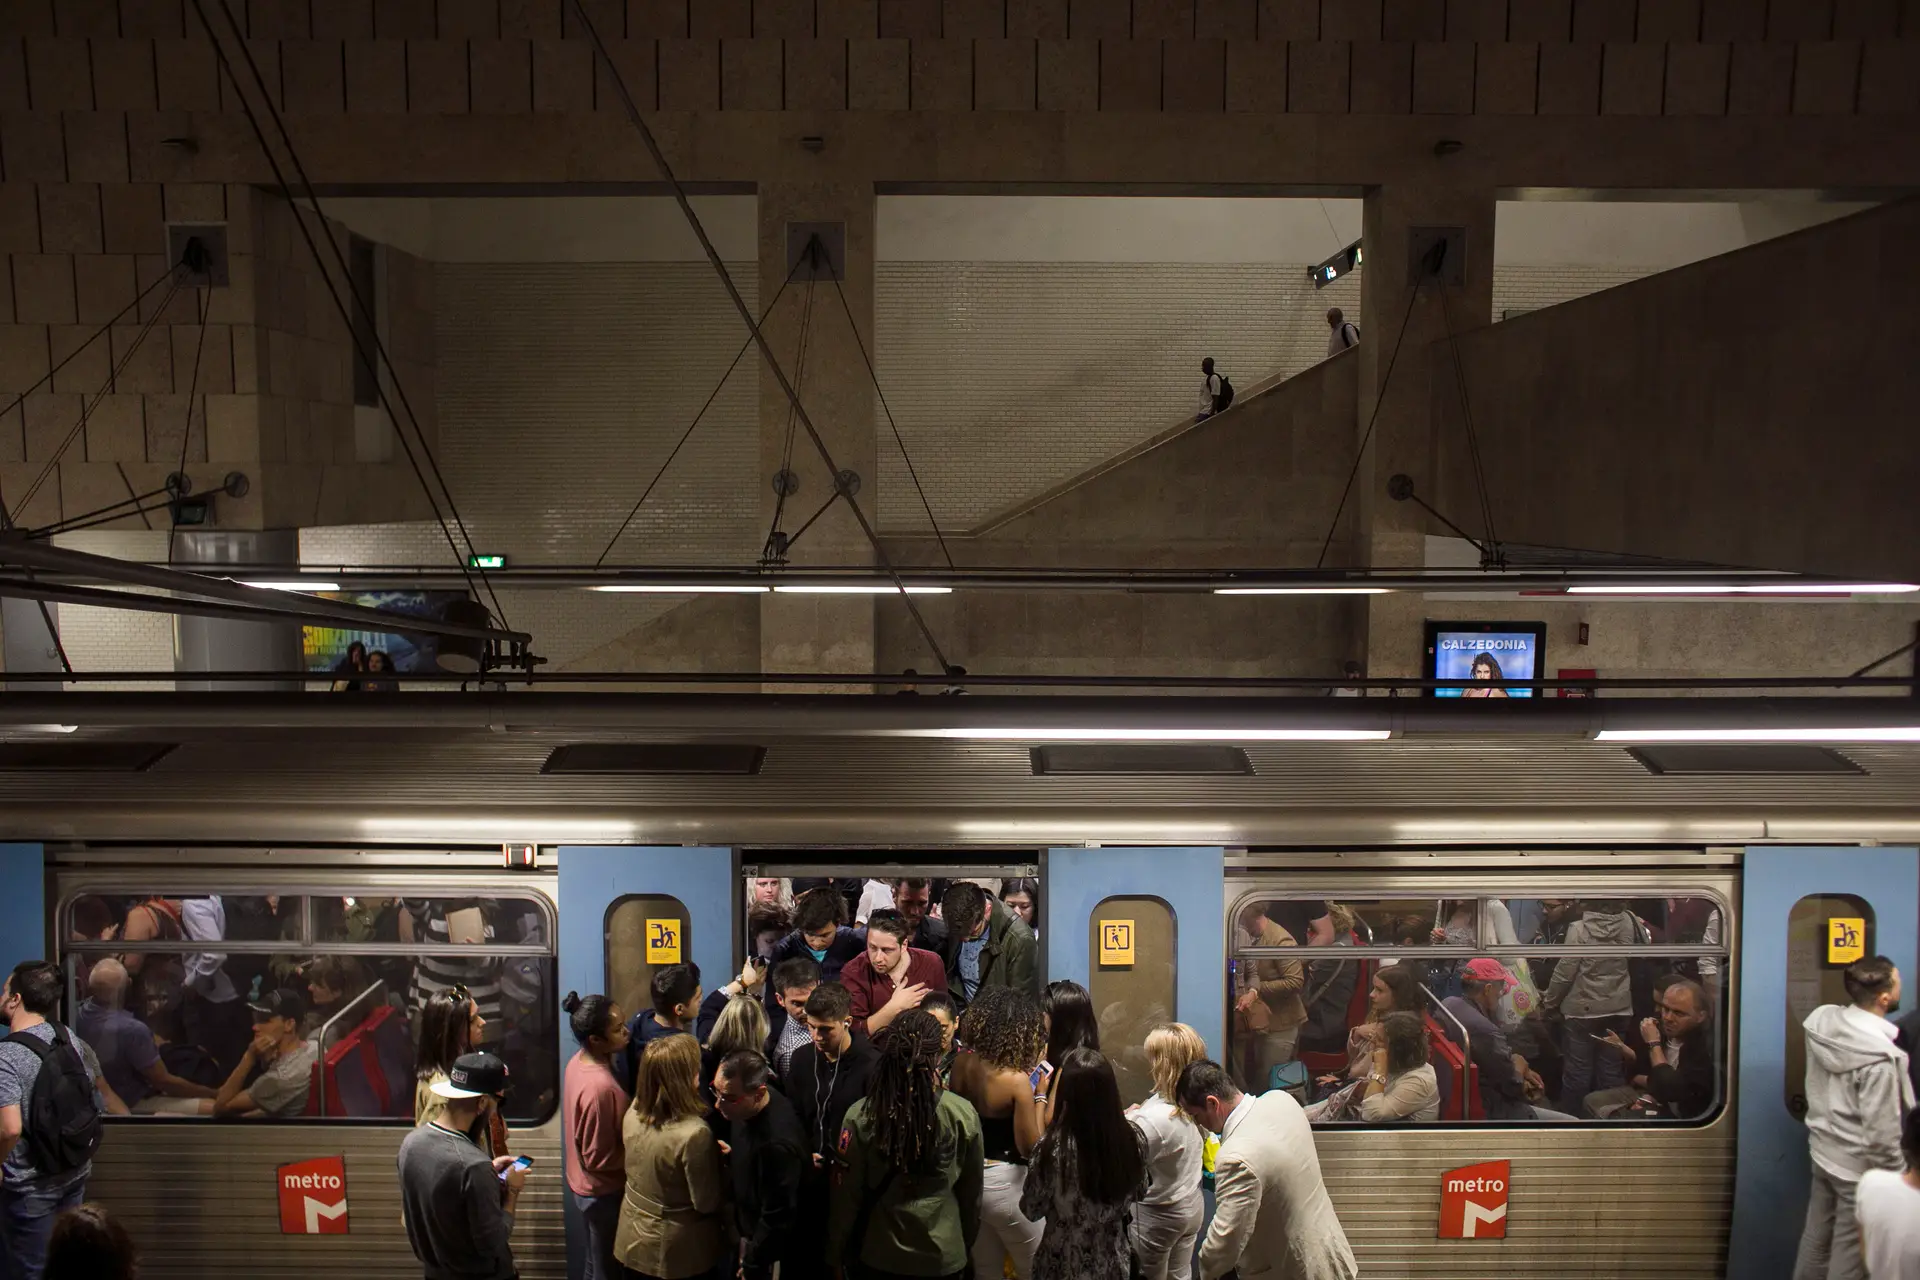 Expansão do metro de Lisboa evita 29 mil toneladas de dióxido carbono, garante ministro